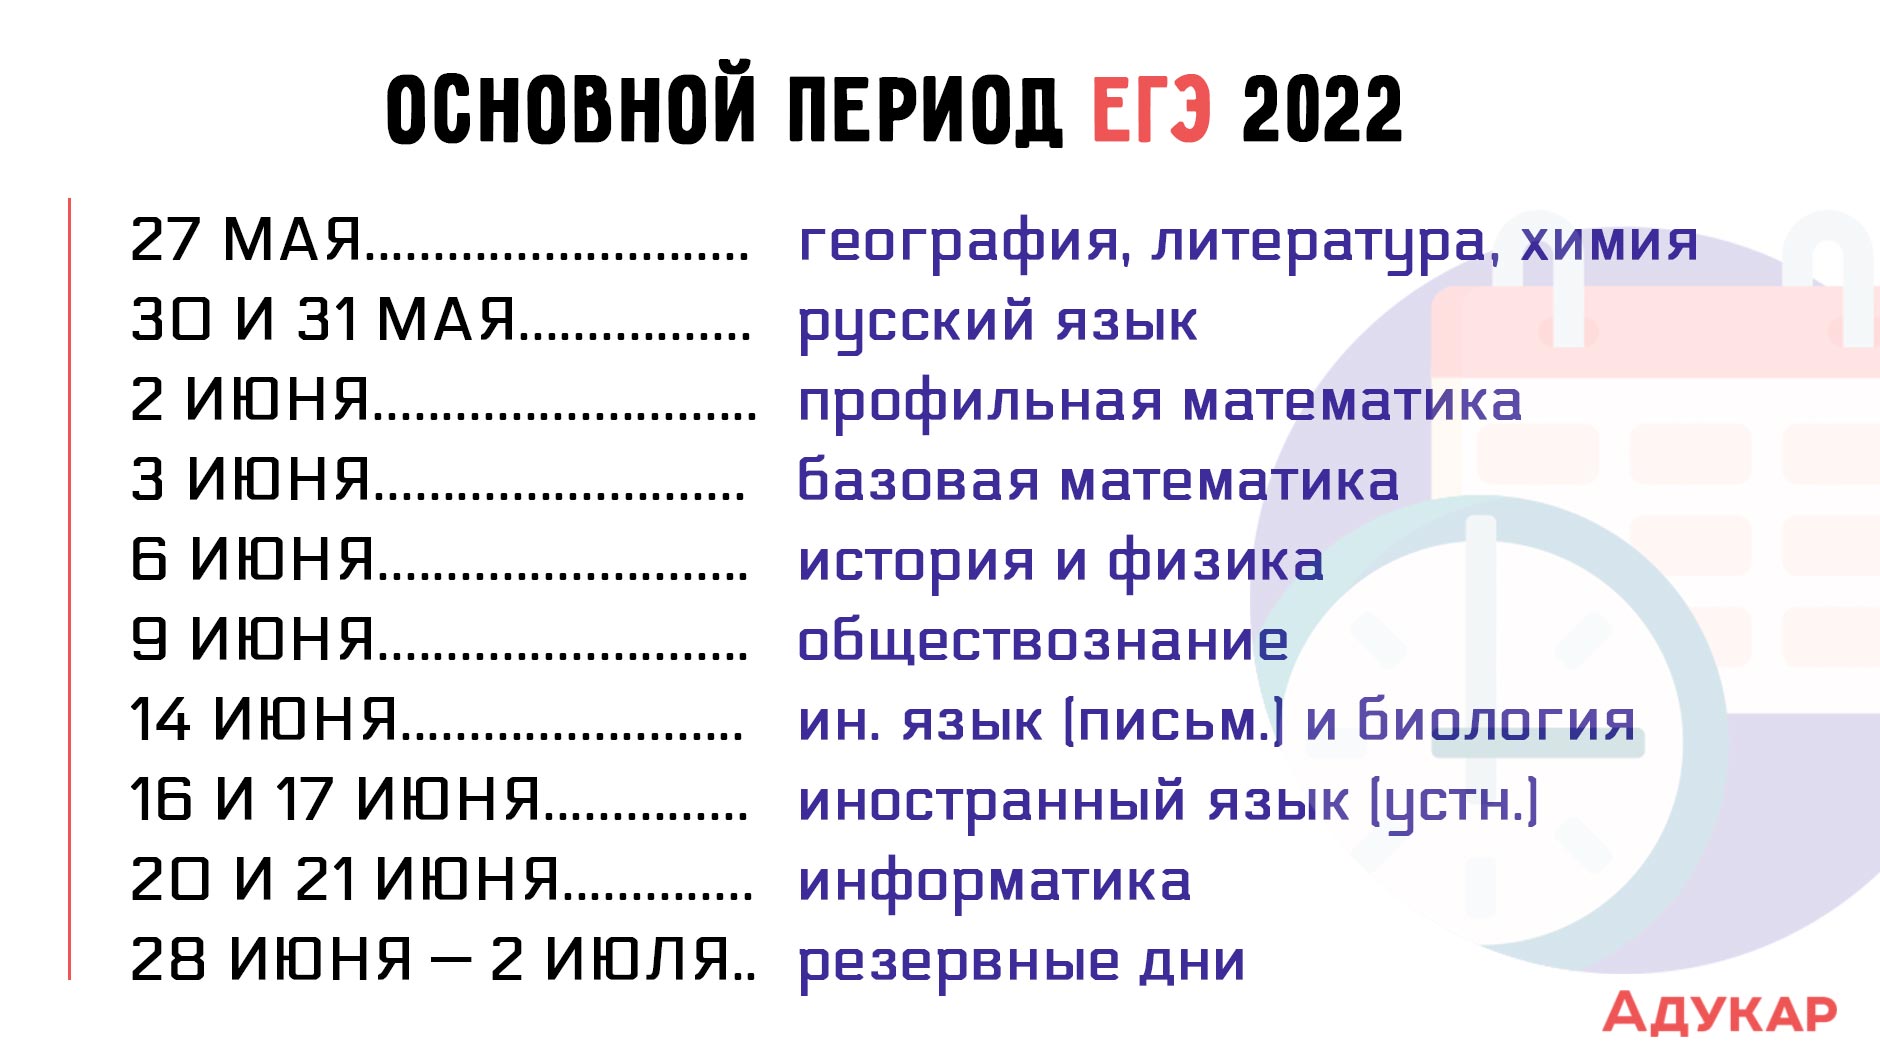 Последний егэ в 2024 году. Даты экзаменов ЕГЭ 2022. Основной период сдачи ЕГЭ 2022. Дата экзаменов ЕГЭ В 2022 году. Сроки проведения ЕГЭ 2022.